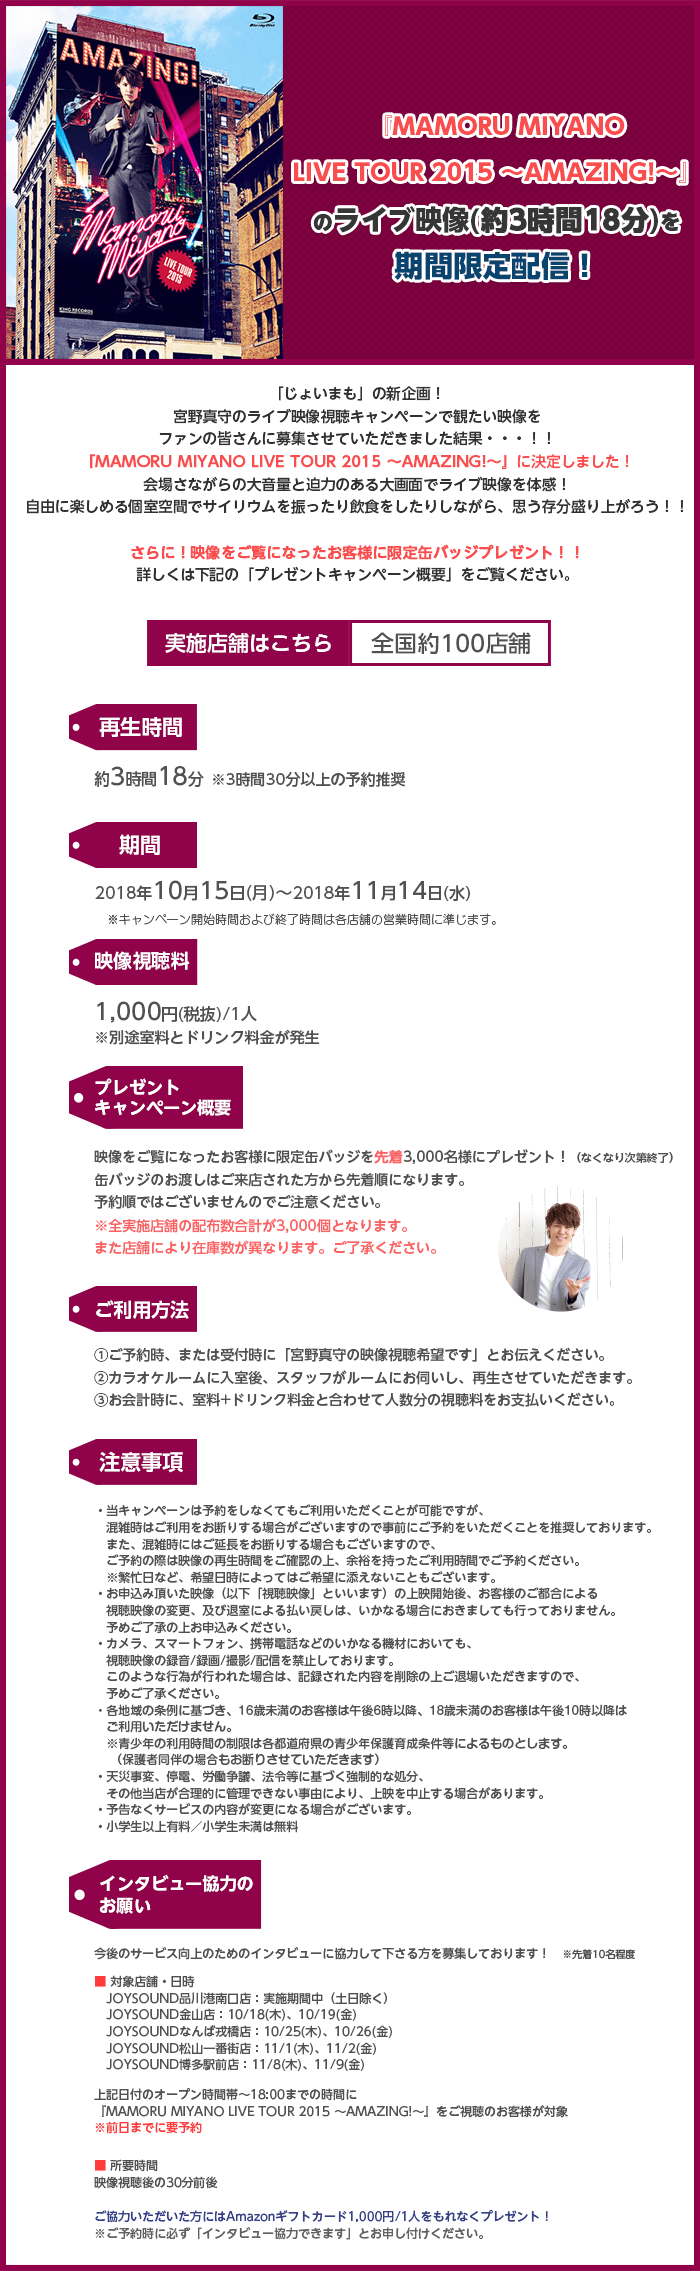 宮野真守のライブ映像『MAMORU MIYANO LIVE TOUR 2015 ～AMAZING!～』を期間限定配信！